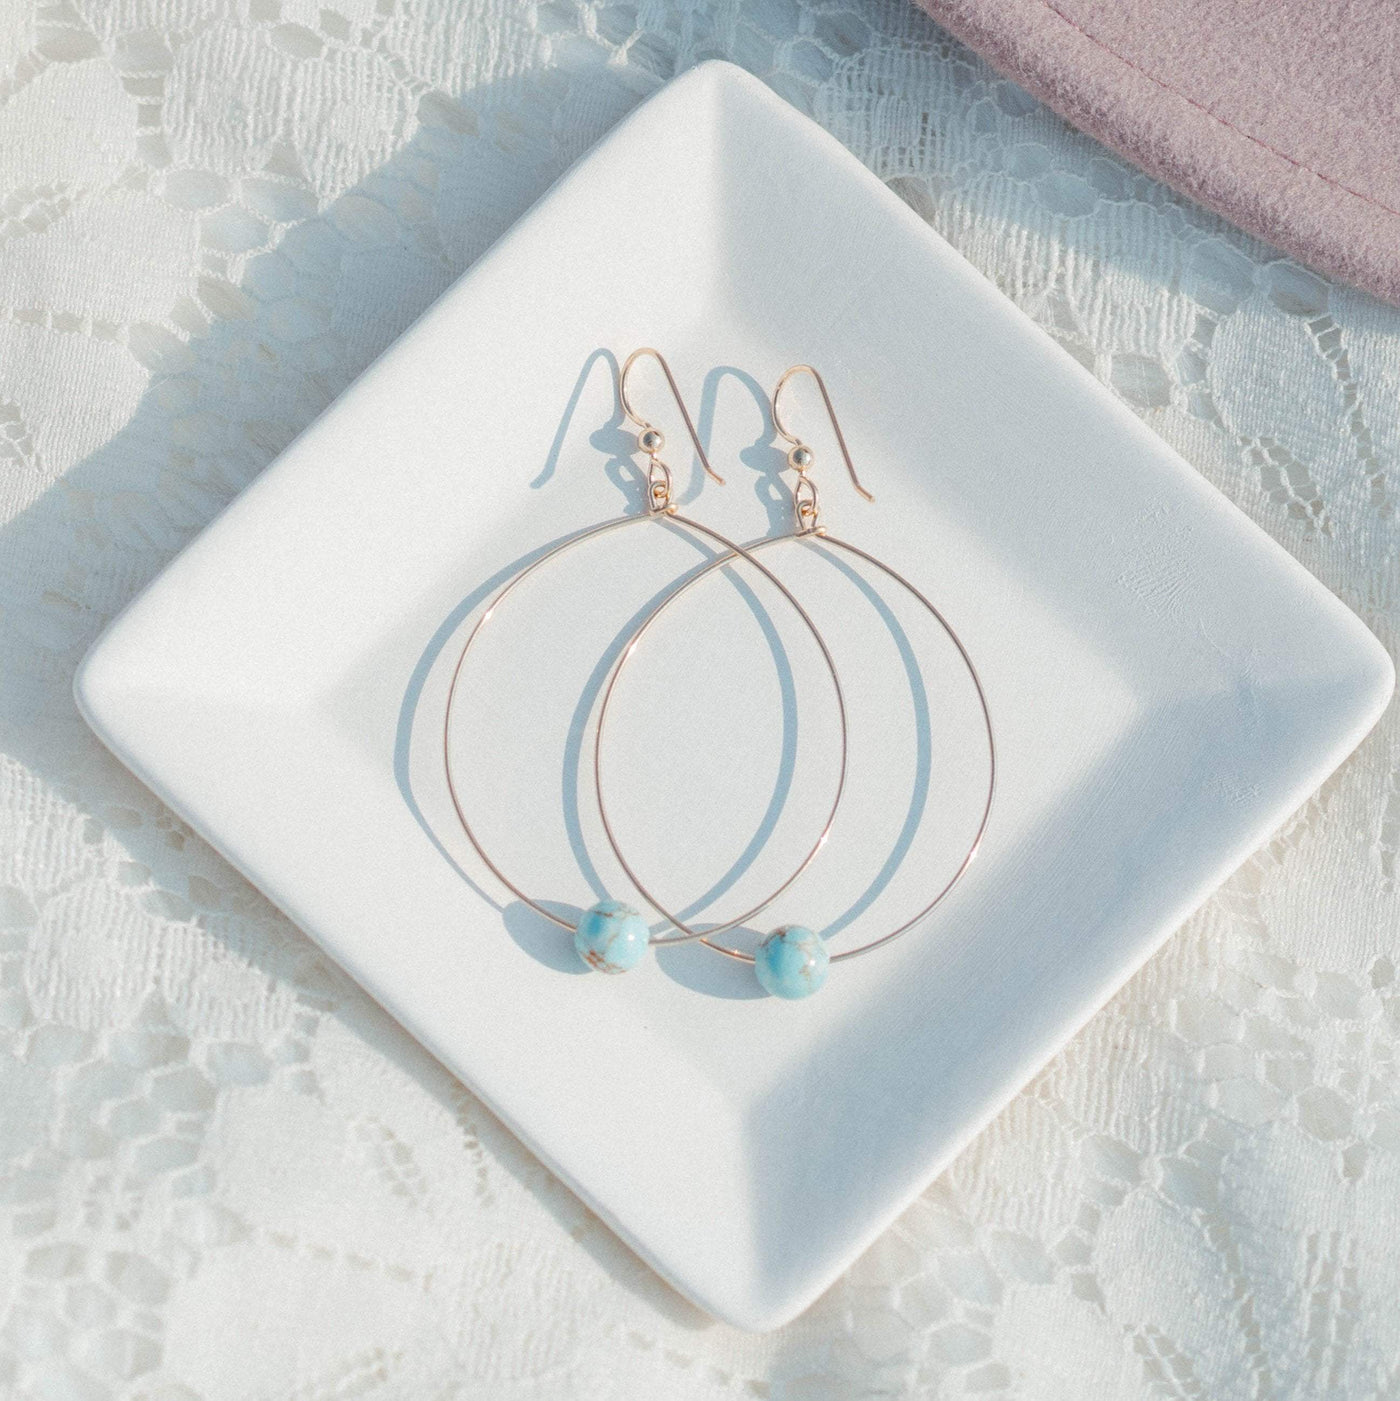 Topaz & Pearl Earrings Simple Bead Hoops, Icy Turquoise